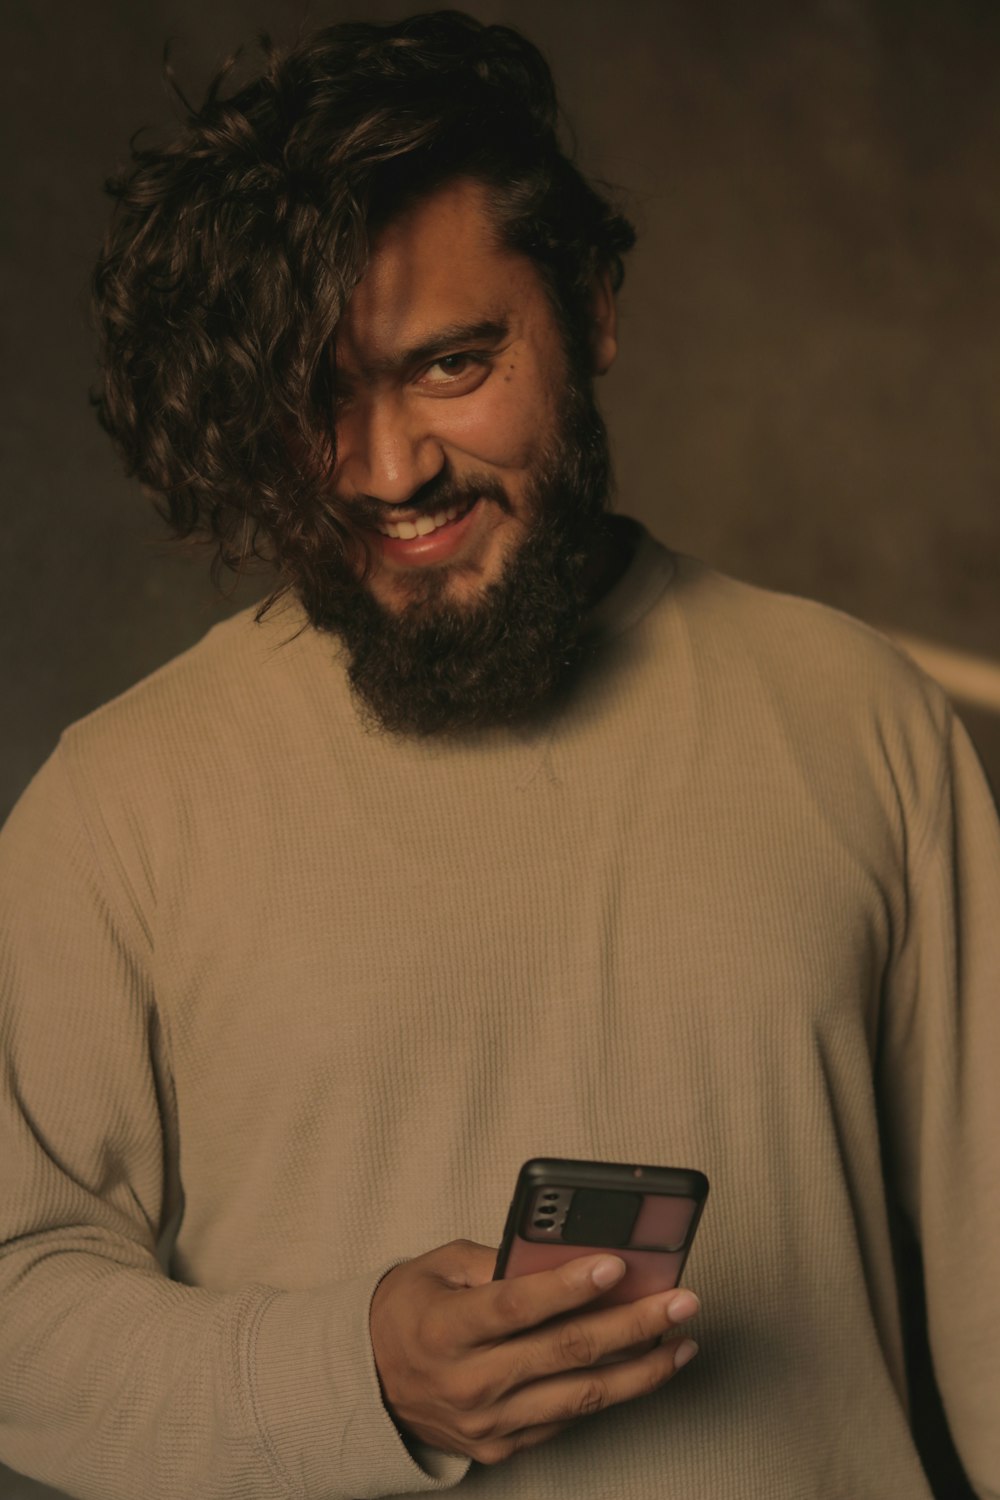 Un uomo con la barba che tiene un telefono cellulare